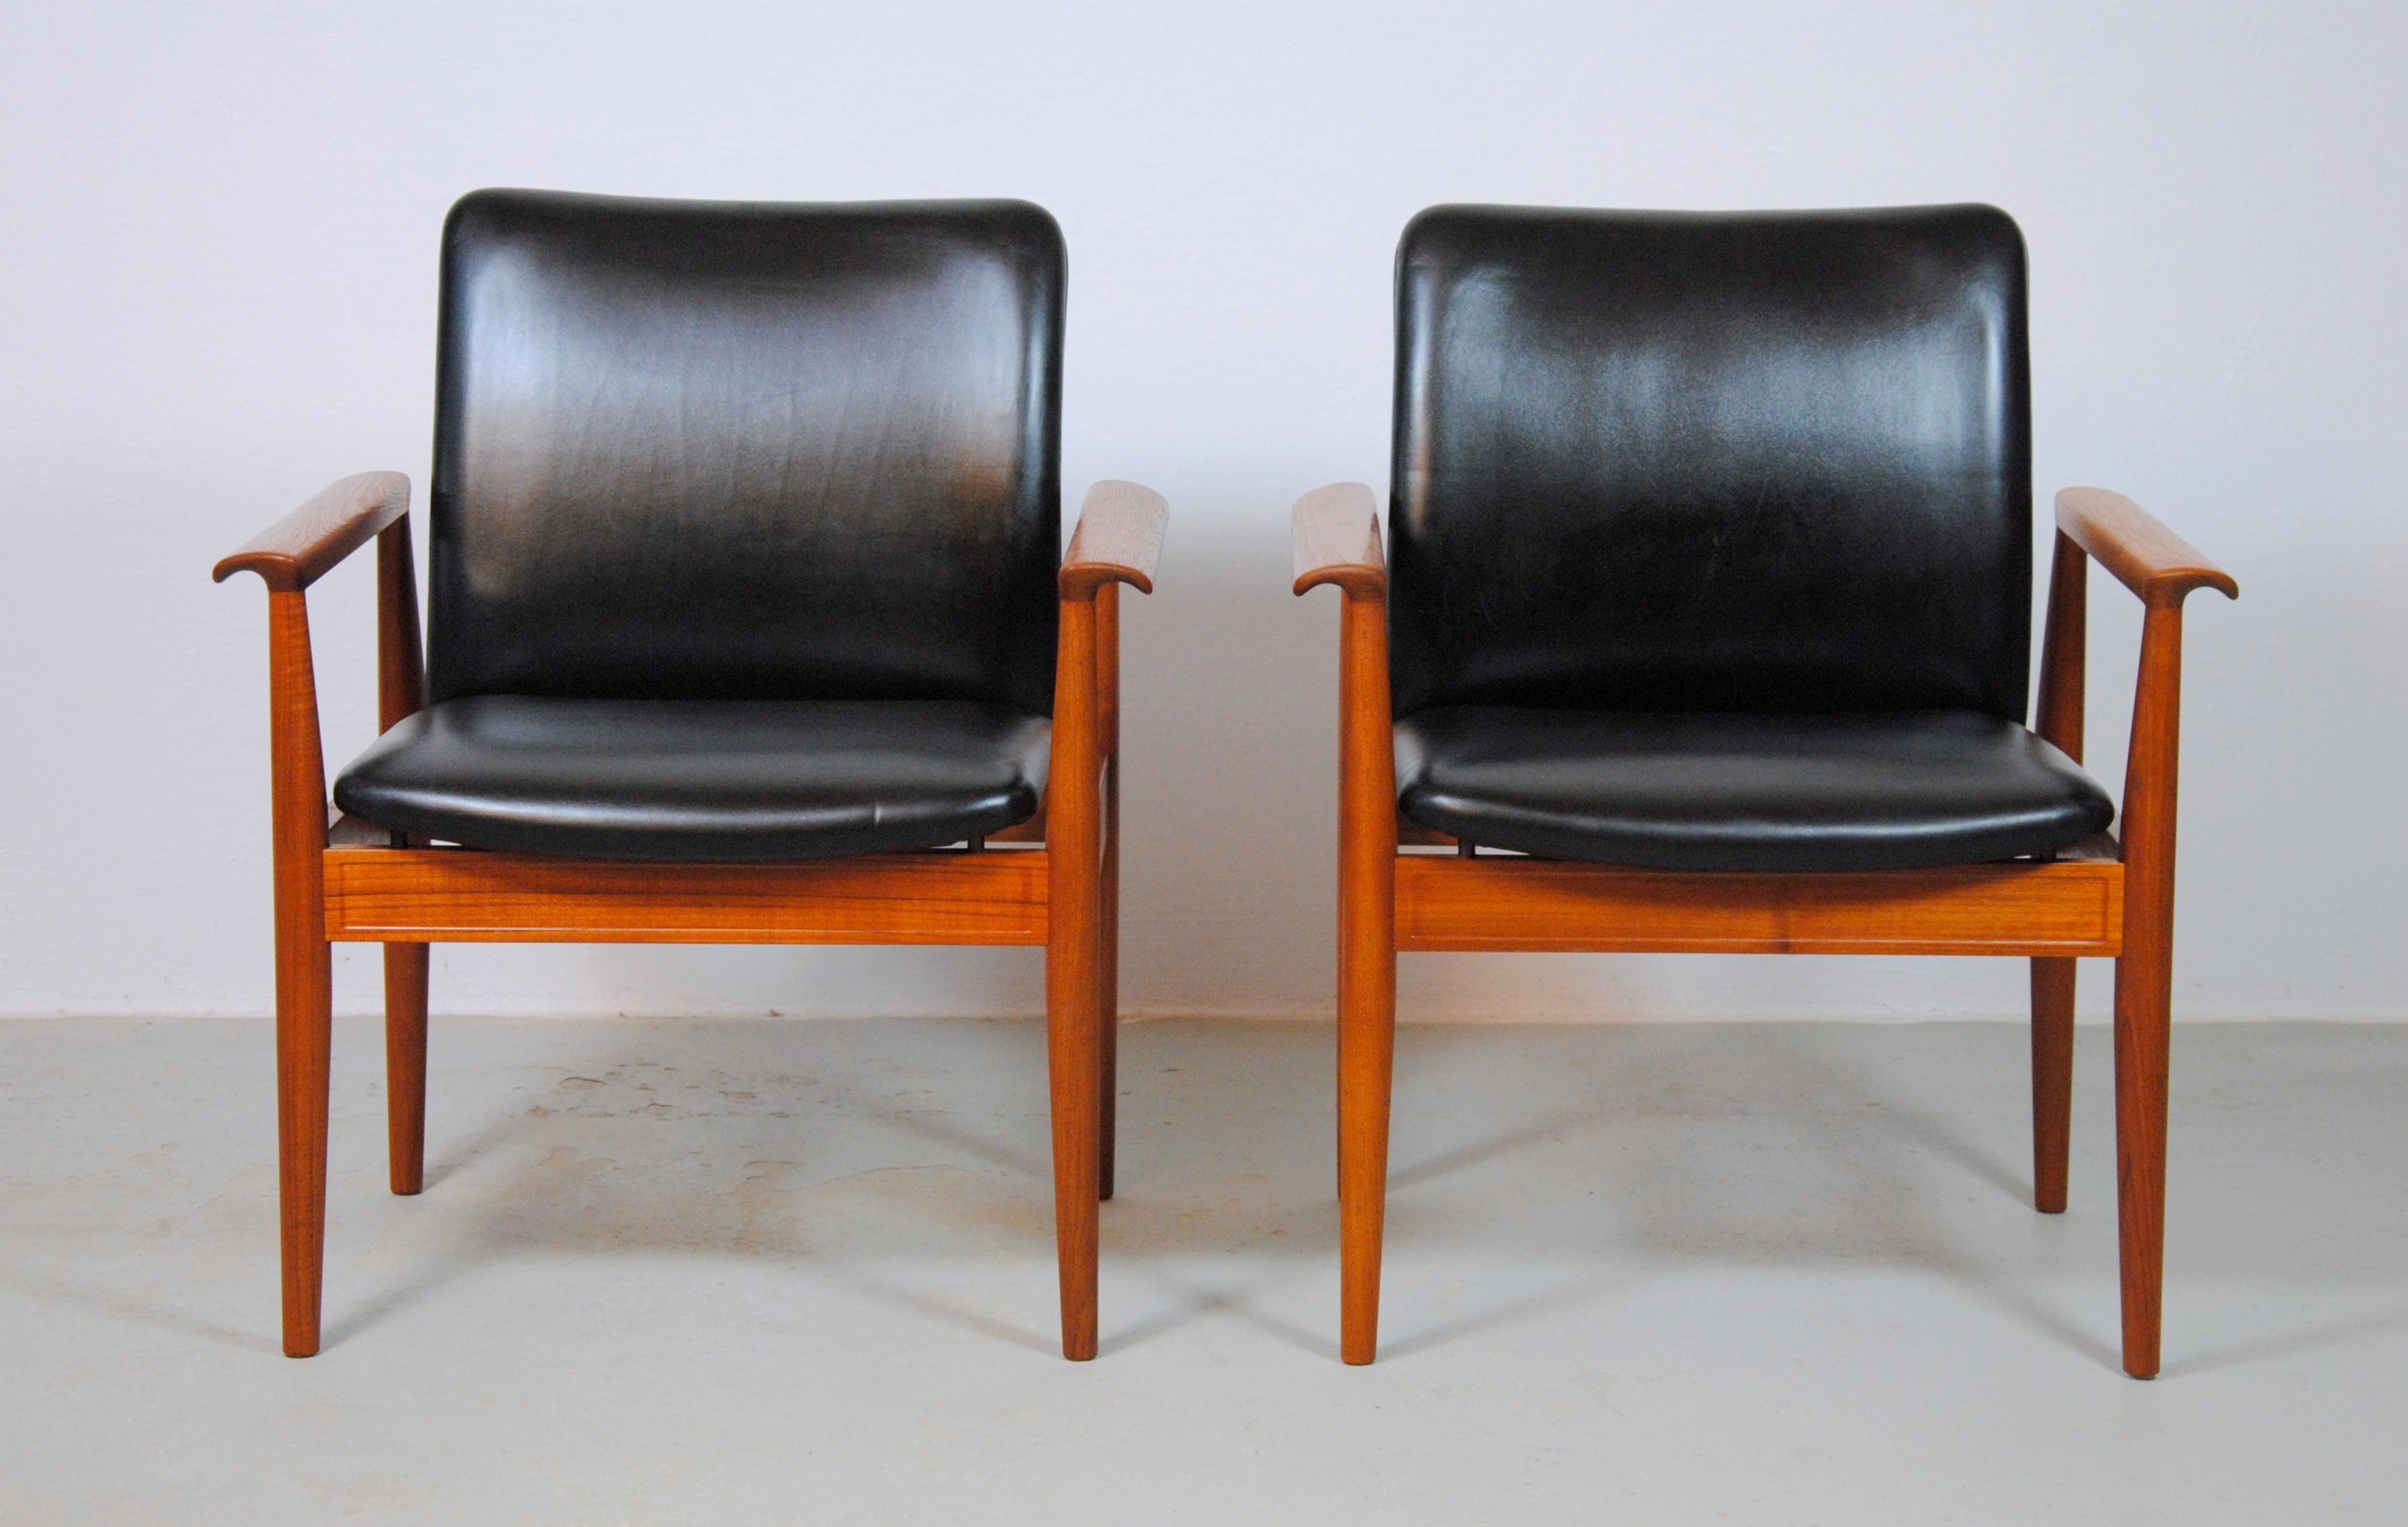 Ensemble de deux fauteuils Finn Juhl en teck de Bangkok et cuir noir, conçus en 1963 et fabriqués par France and Son / Cado dans les années 1960.

Les fauteuils ont une structure solide et stable en teck et des sièges confortables en cuir noir.